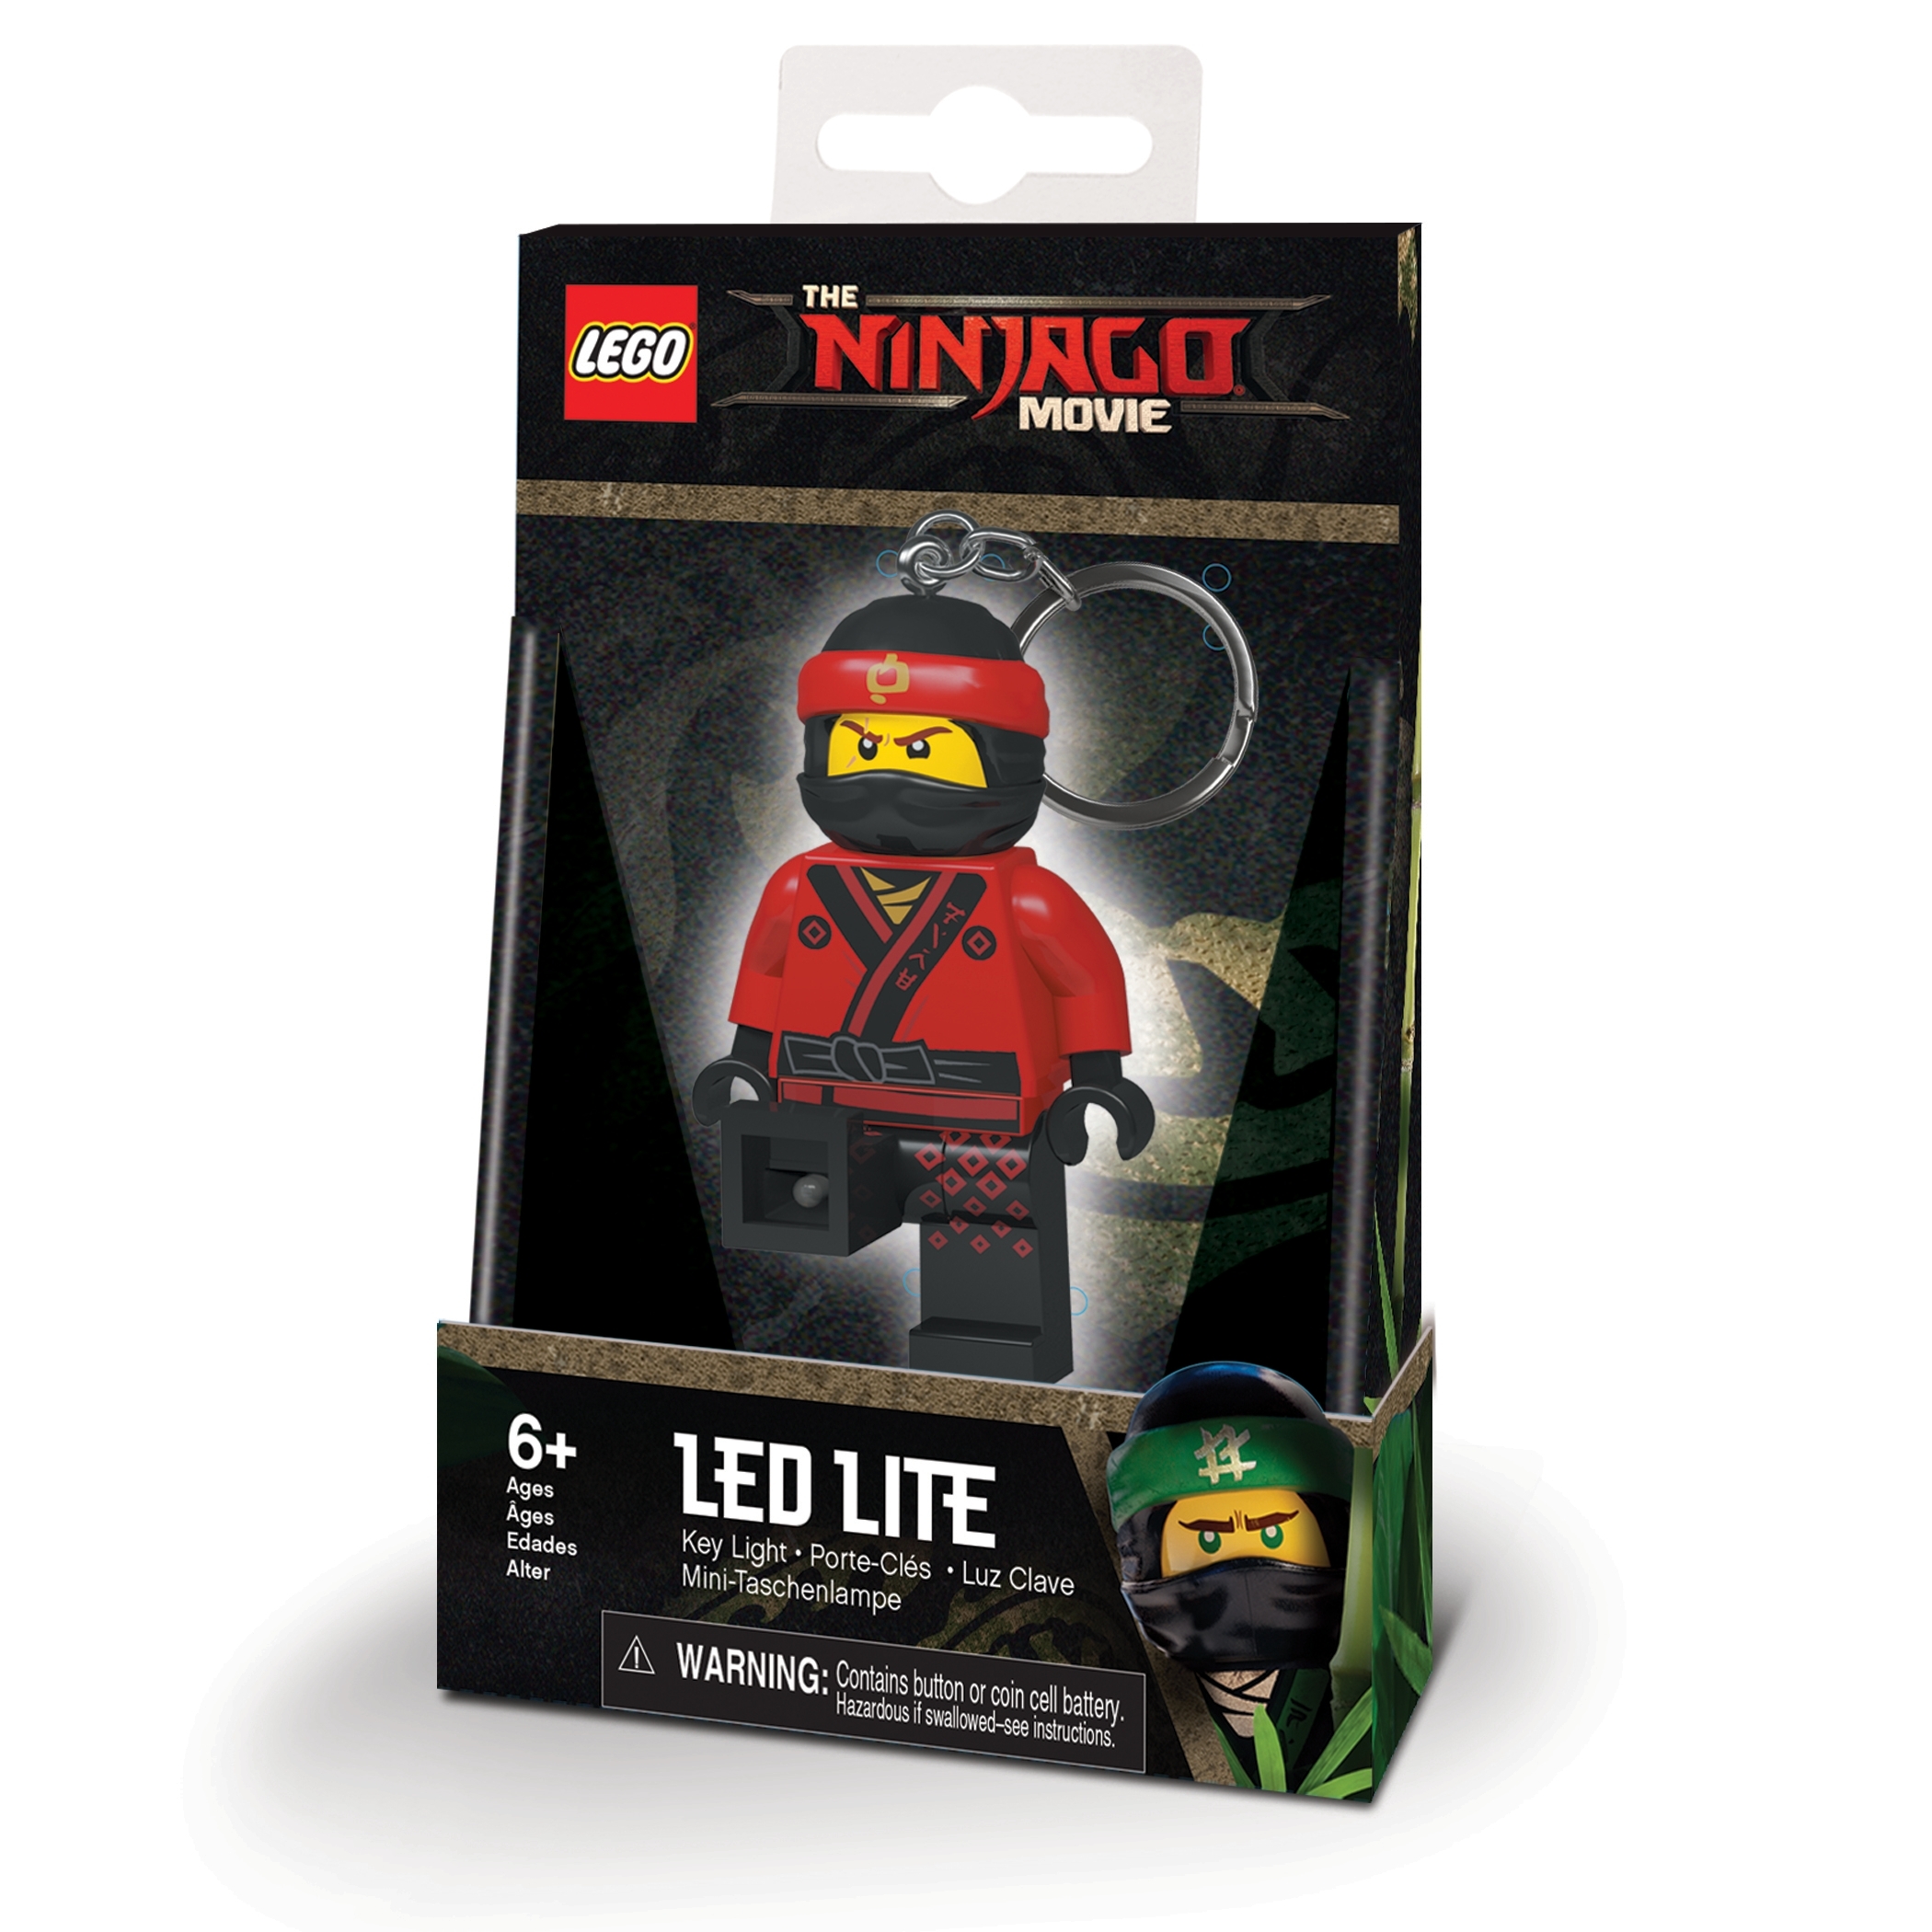 NEW! LEGO 853694 Ninjago Movie Kai Key Chain